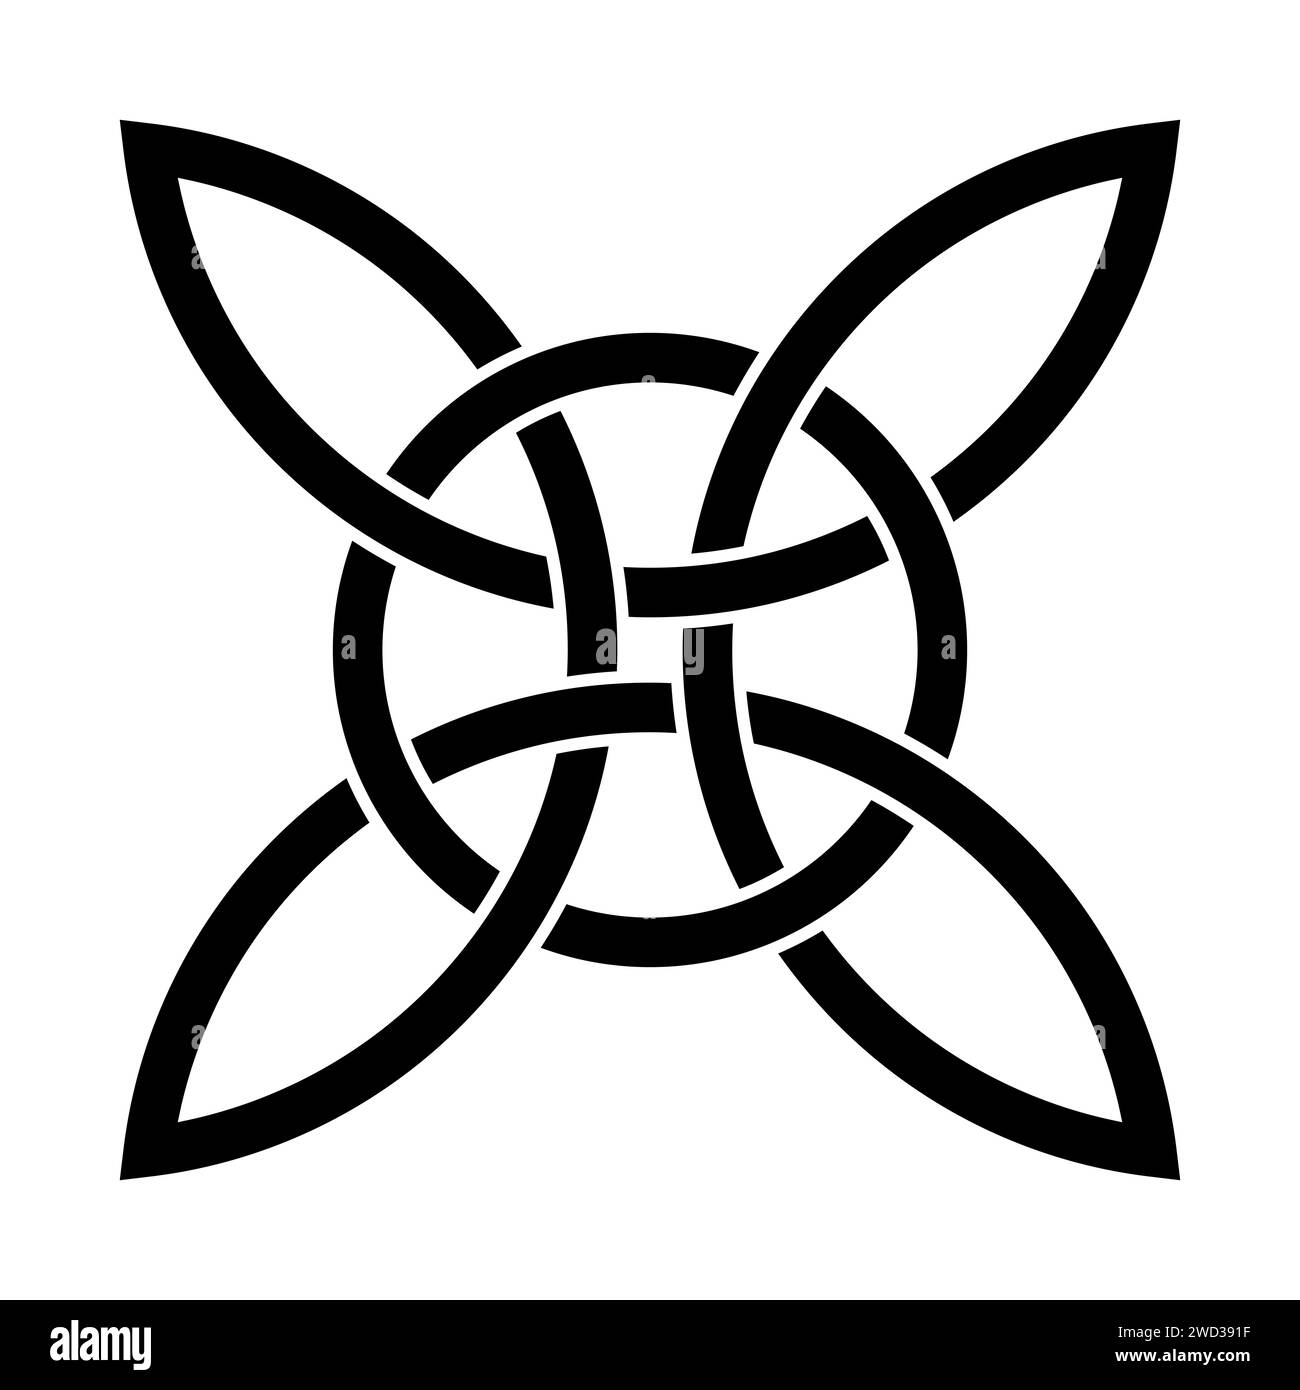 Nœud quad celtique avec cercle entrelacé. Croix celtique formée de quatre arcs interconnectés sans fin, entrelacés avec un cercle. Symbole spirituel et religieux. Banque D'Images